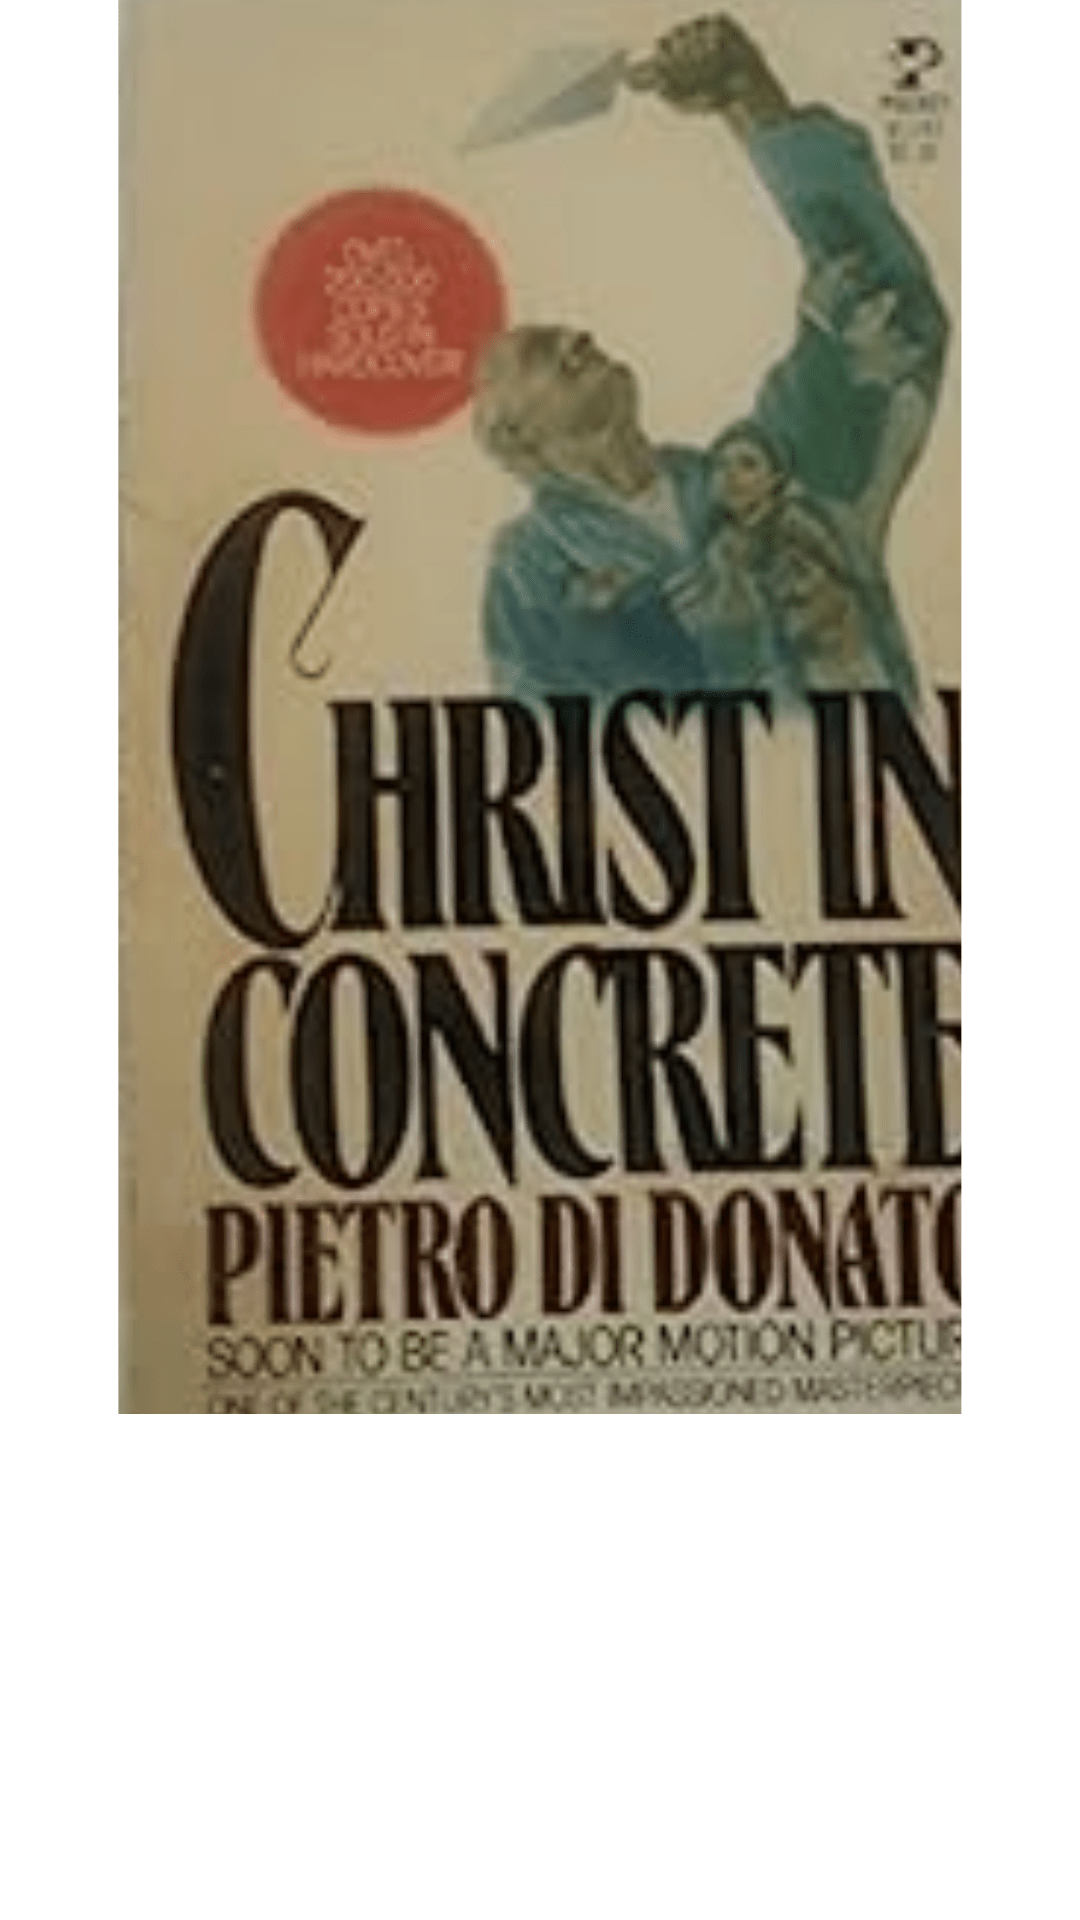 Christ in Concrete by Pietro di Donato